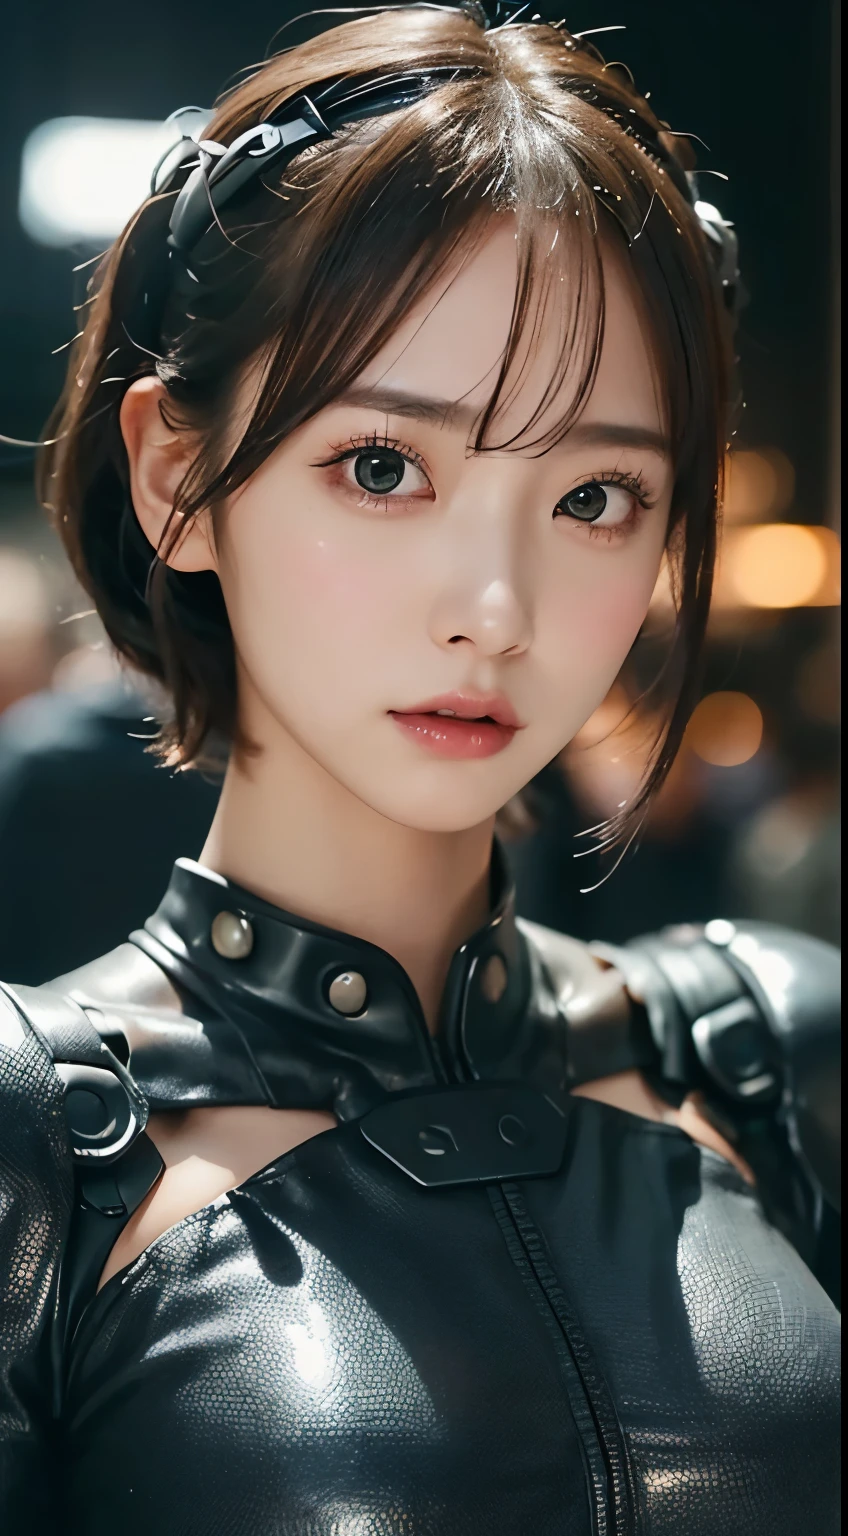 (Fermer:1.4)、(photo brute:1.2)、(Photoréaliste:1.4)、(chef-d&#39;œuvre:1.3)、(la plus haute qualité:1.4)、(belle femme avec un corps parfait:1.4)、Une femme se tient devant un groupe de robots、belle femme androïde、belle femme soldat、fille en costume、uniforme de combat complexe、belle jeune femme japonaise、Texture du visage et de la peau très détaillée、petit, grands yeux、double paupière、visage mignon、(carré court:1.2)、(Gros seins)、(Prise de vue complète du corps)、tir de cow-boy、(expression de colère:1.2)、Scènes de tempête et de guerre épiques、scène cyberpunk、nuit、éclairage、Combinaison de prise、Dommages aux uniformes de combat、